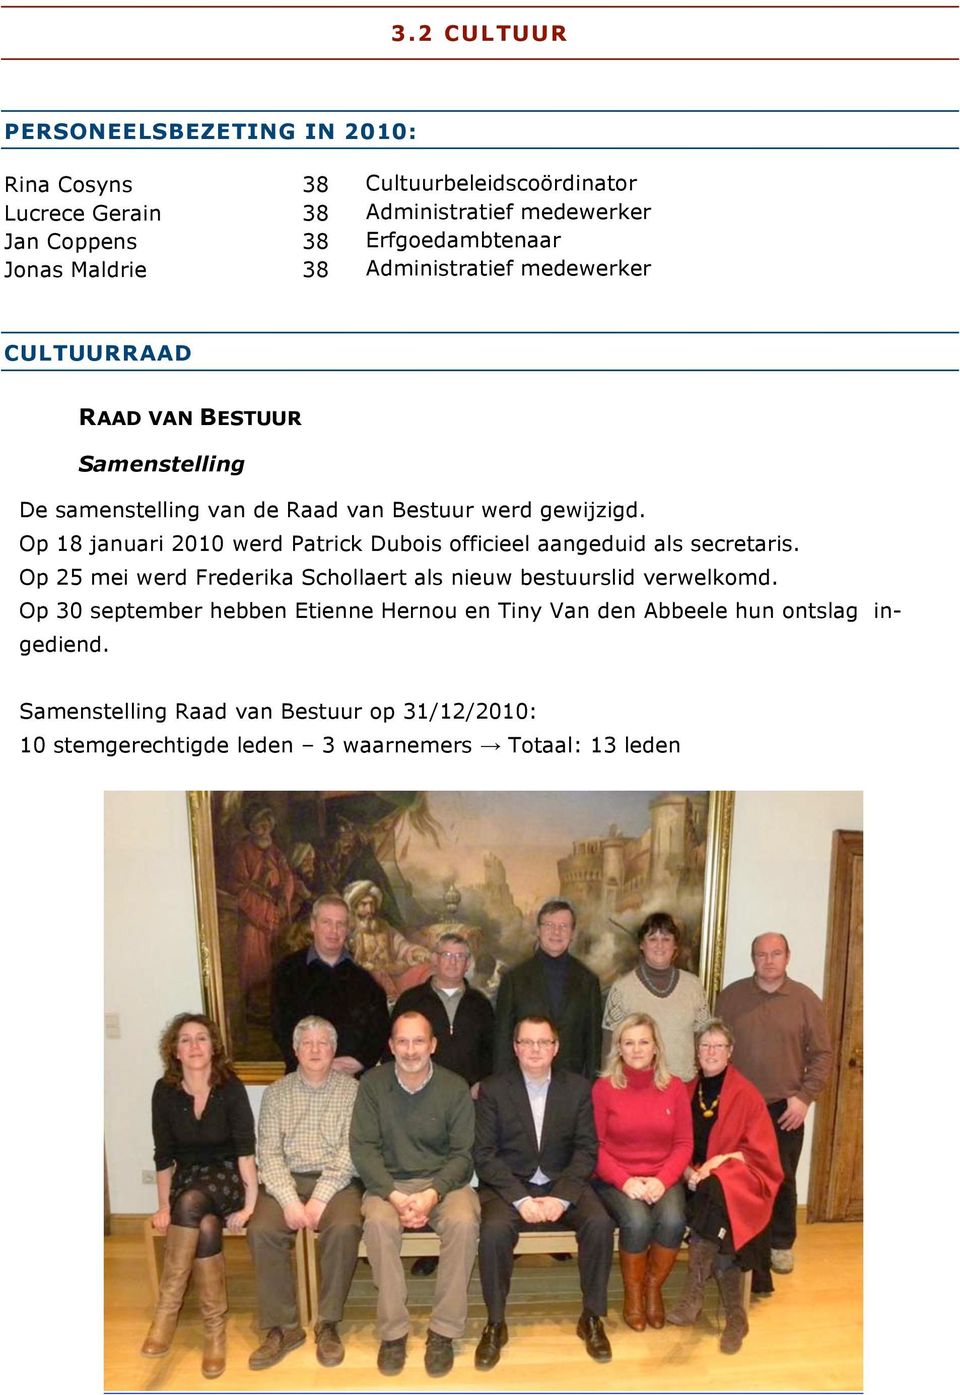 Op 18 januari 2010 werd Patrick Dubois officieel aangeduid als secretaris. Op 25 mei werd Frederika Schollaert als nieuw bestuurslid verwelkomd.